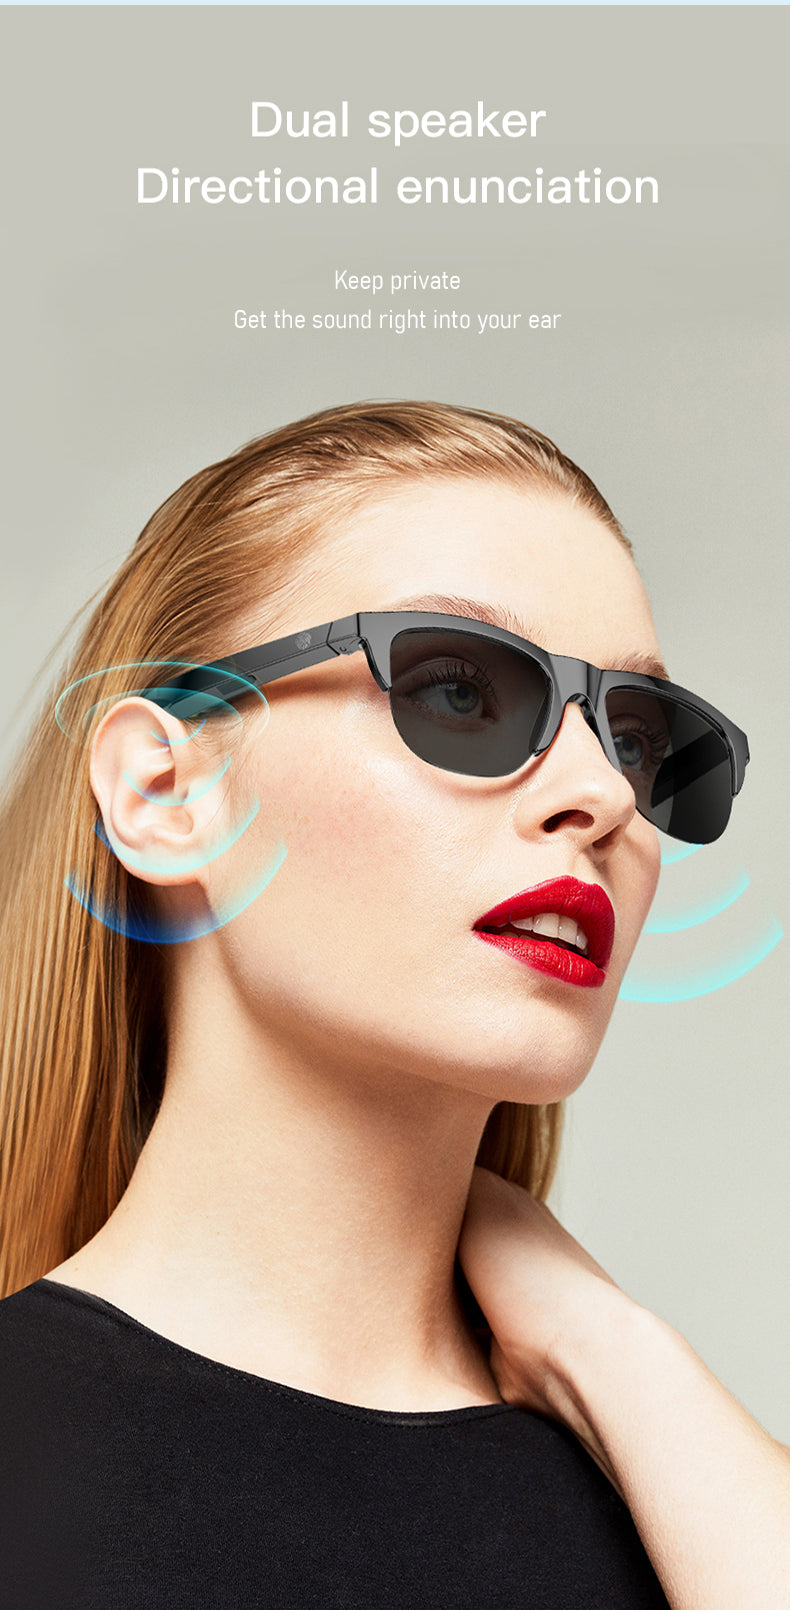 أزياء Tws F06 السفر الرياضة في الهواء الطلق نظارات سماعات لاسلكية مع ميكروفون النظارات الذكية سماعة النظارات الشمسية سماعة - شراء النظارات الذكية f06 نظارات سماعة سماعات رياضية المنتج